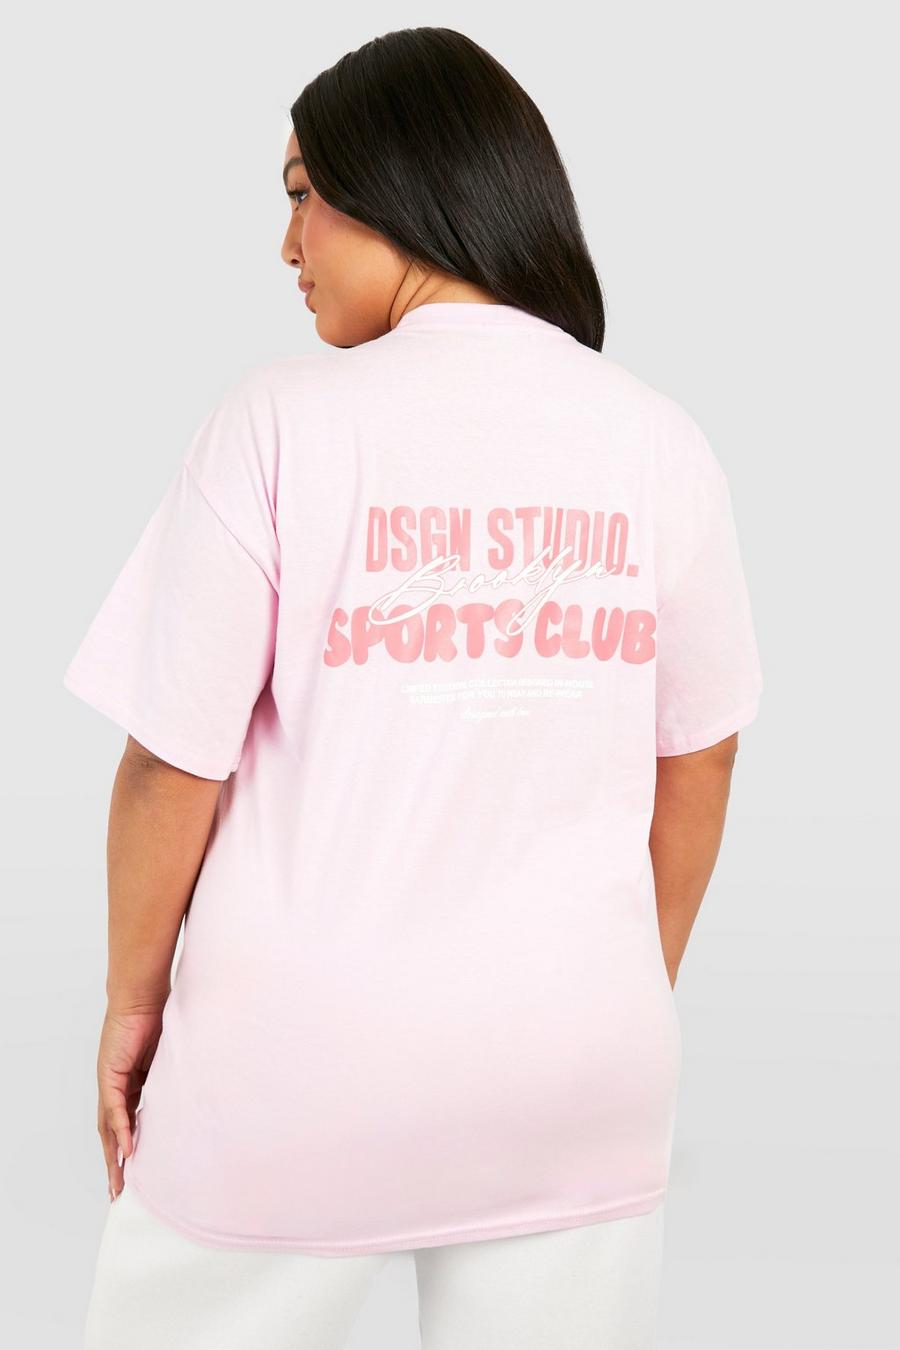 Plus T-Shirt mit Dsgn Studio Brooklyn Schriftzug, Baby pink